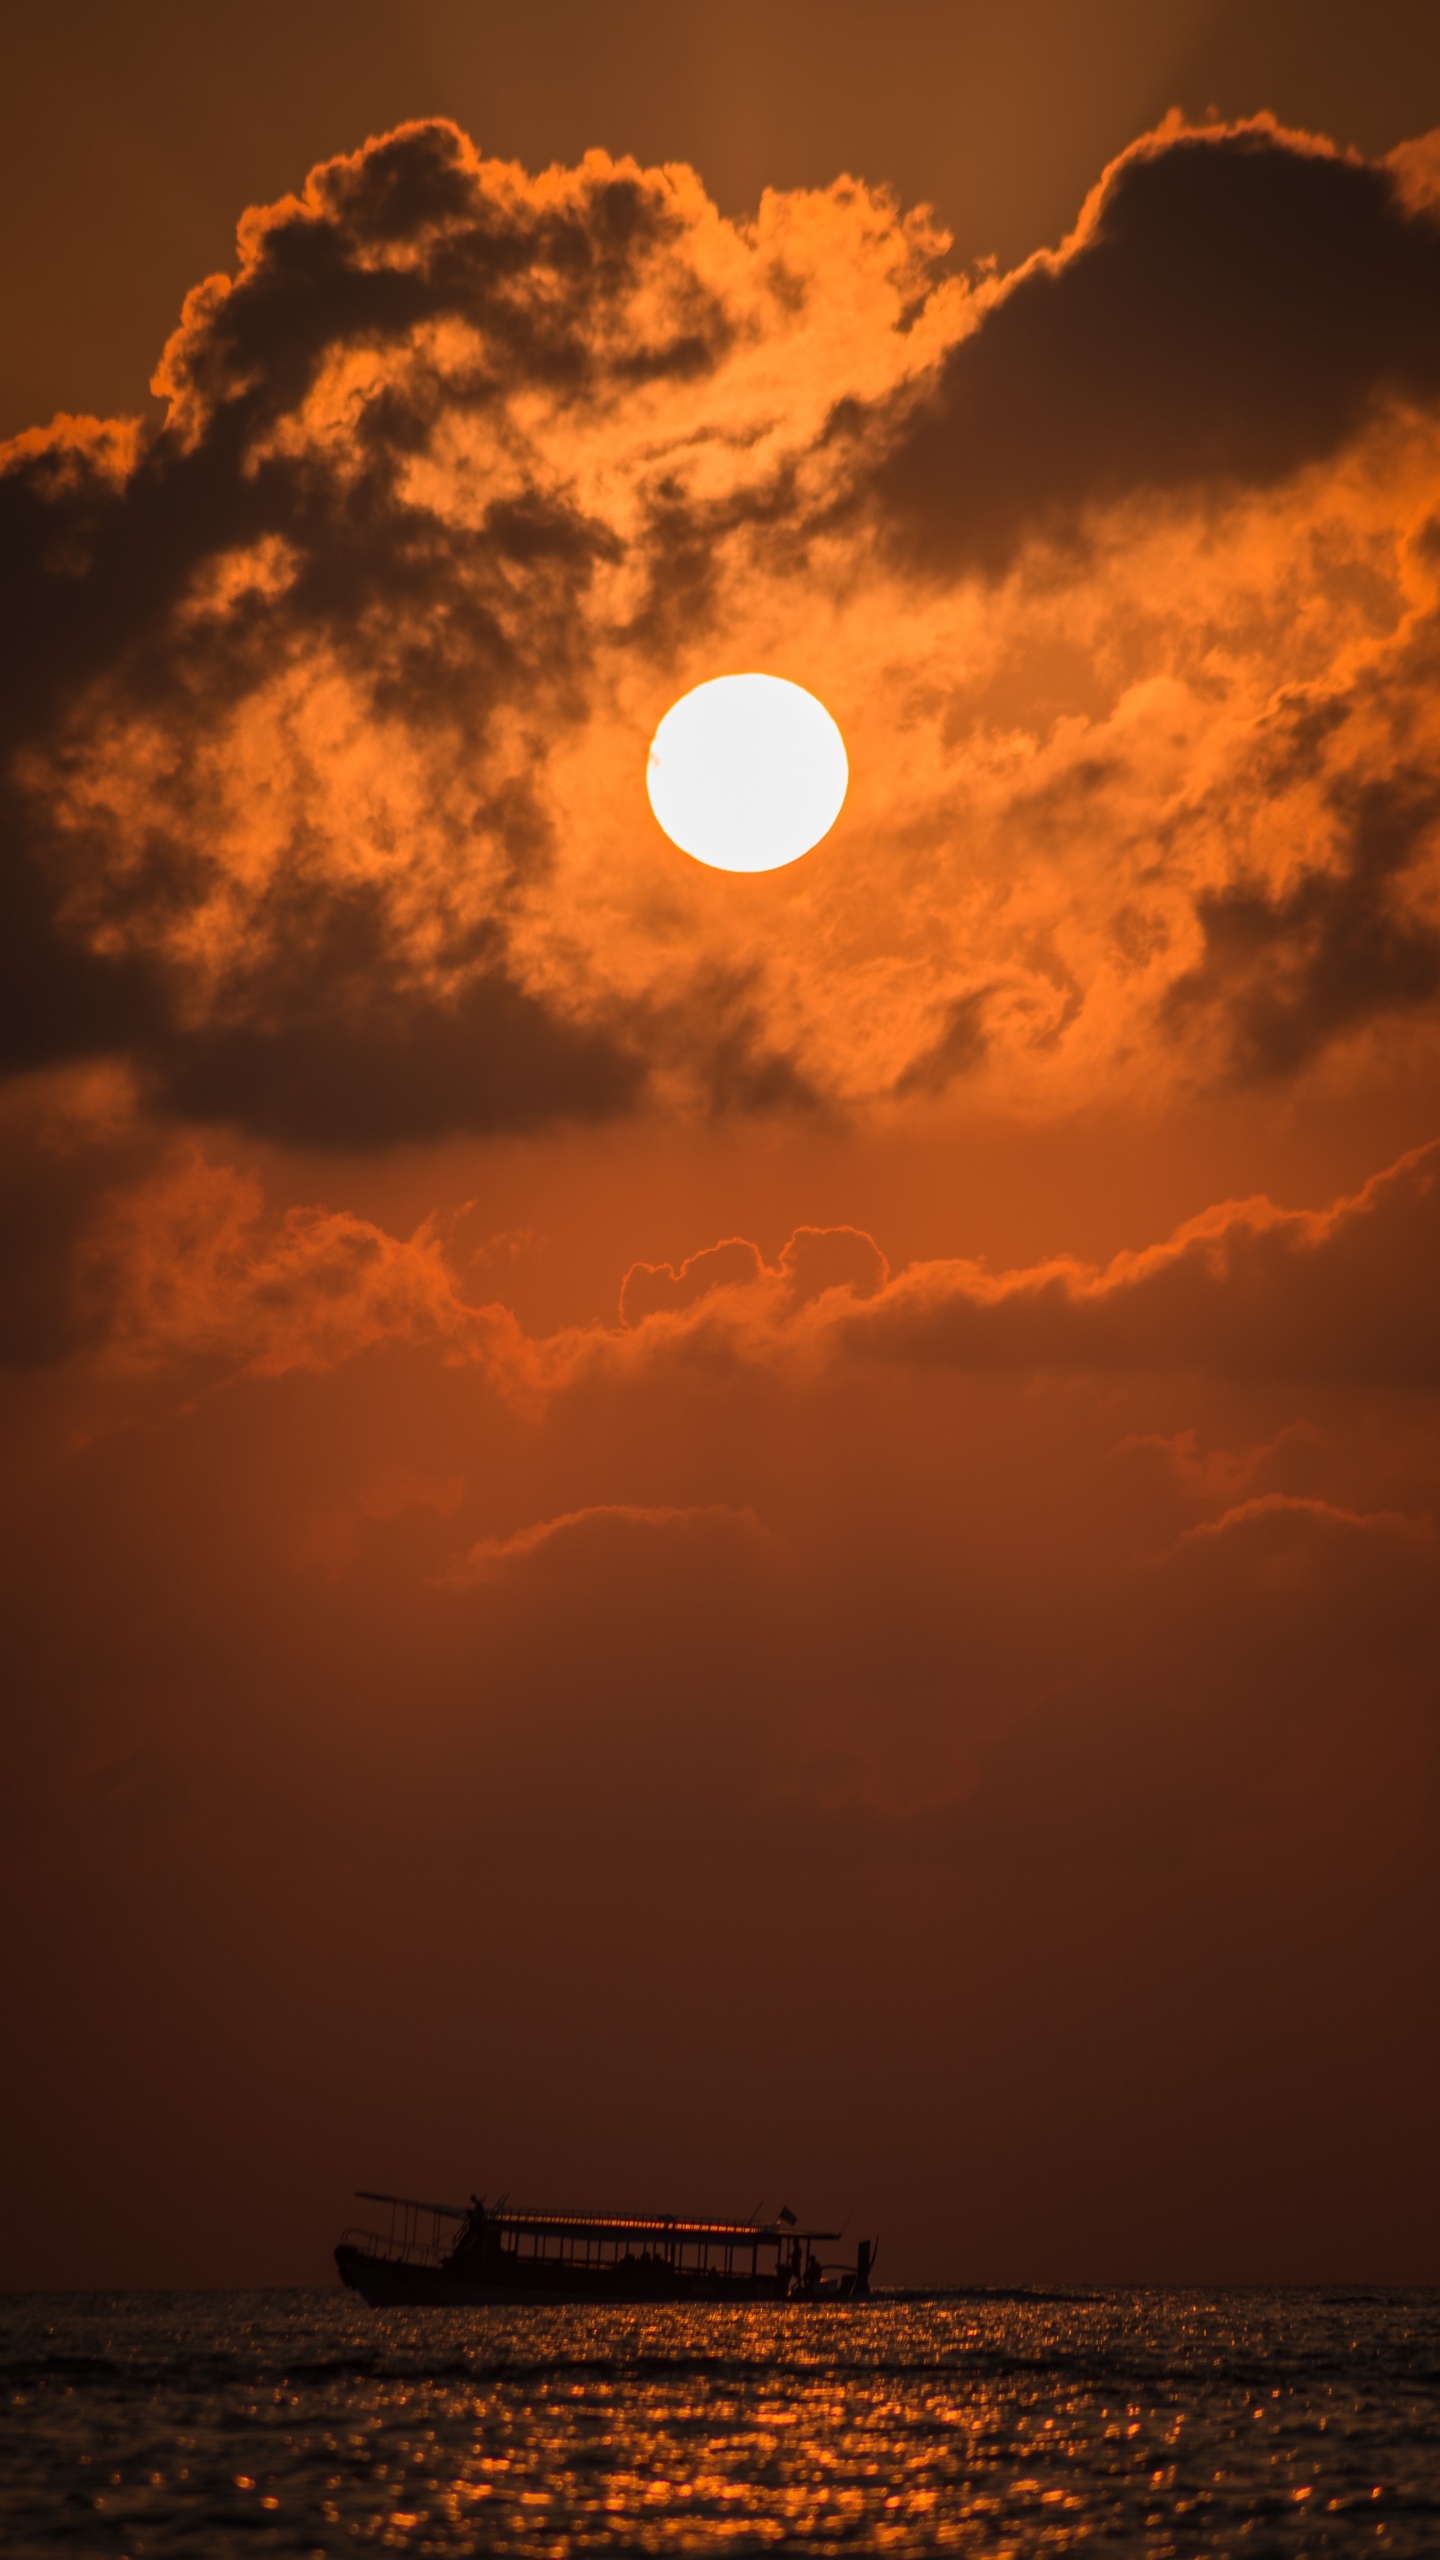 Sonnenuntergang, Afterglow, Sonne, Cloud, Orange. Wallpaper in 1440x2560 Resolution